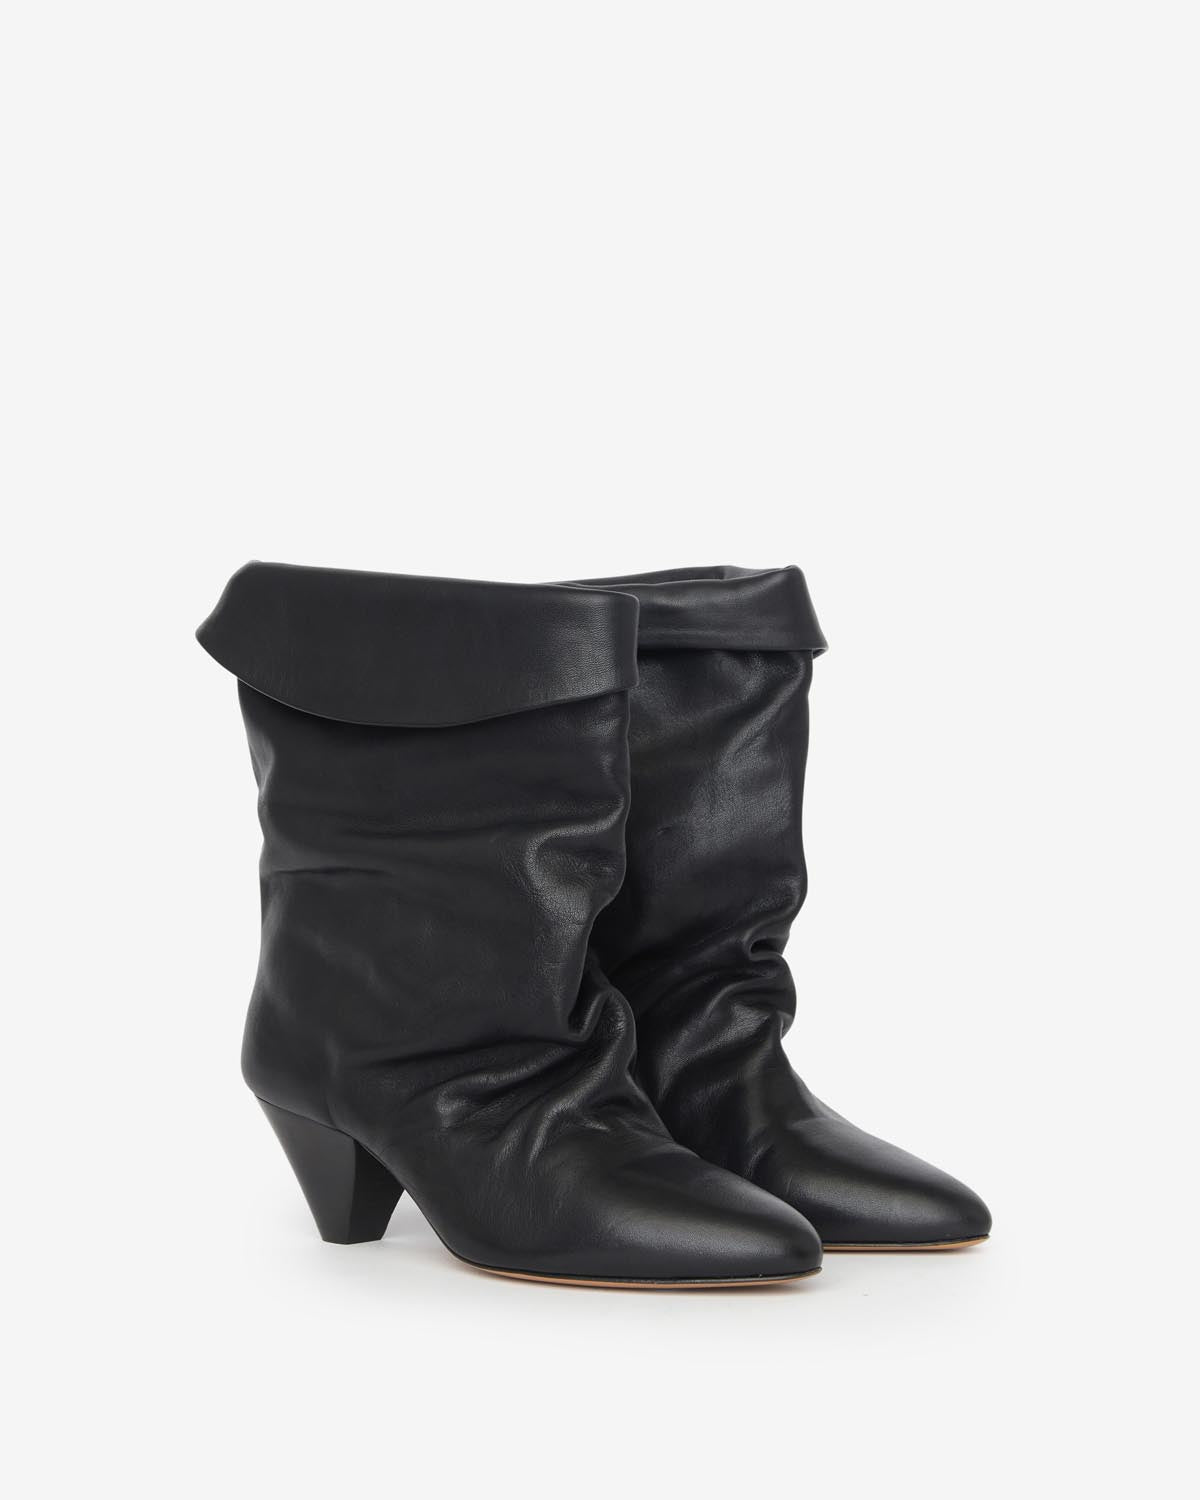 Boots ryska Woman Noir 4